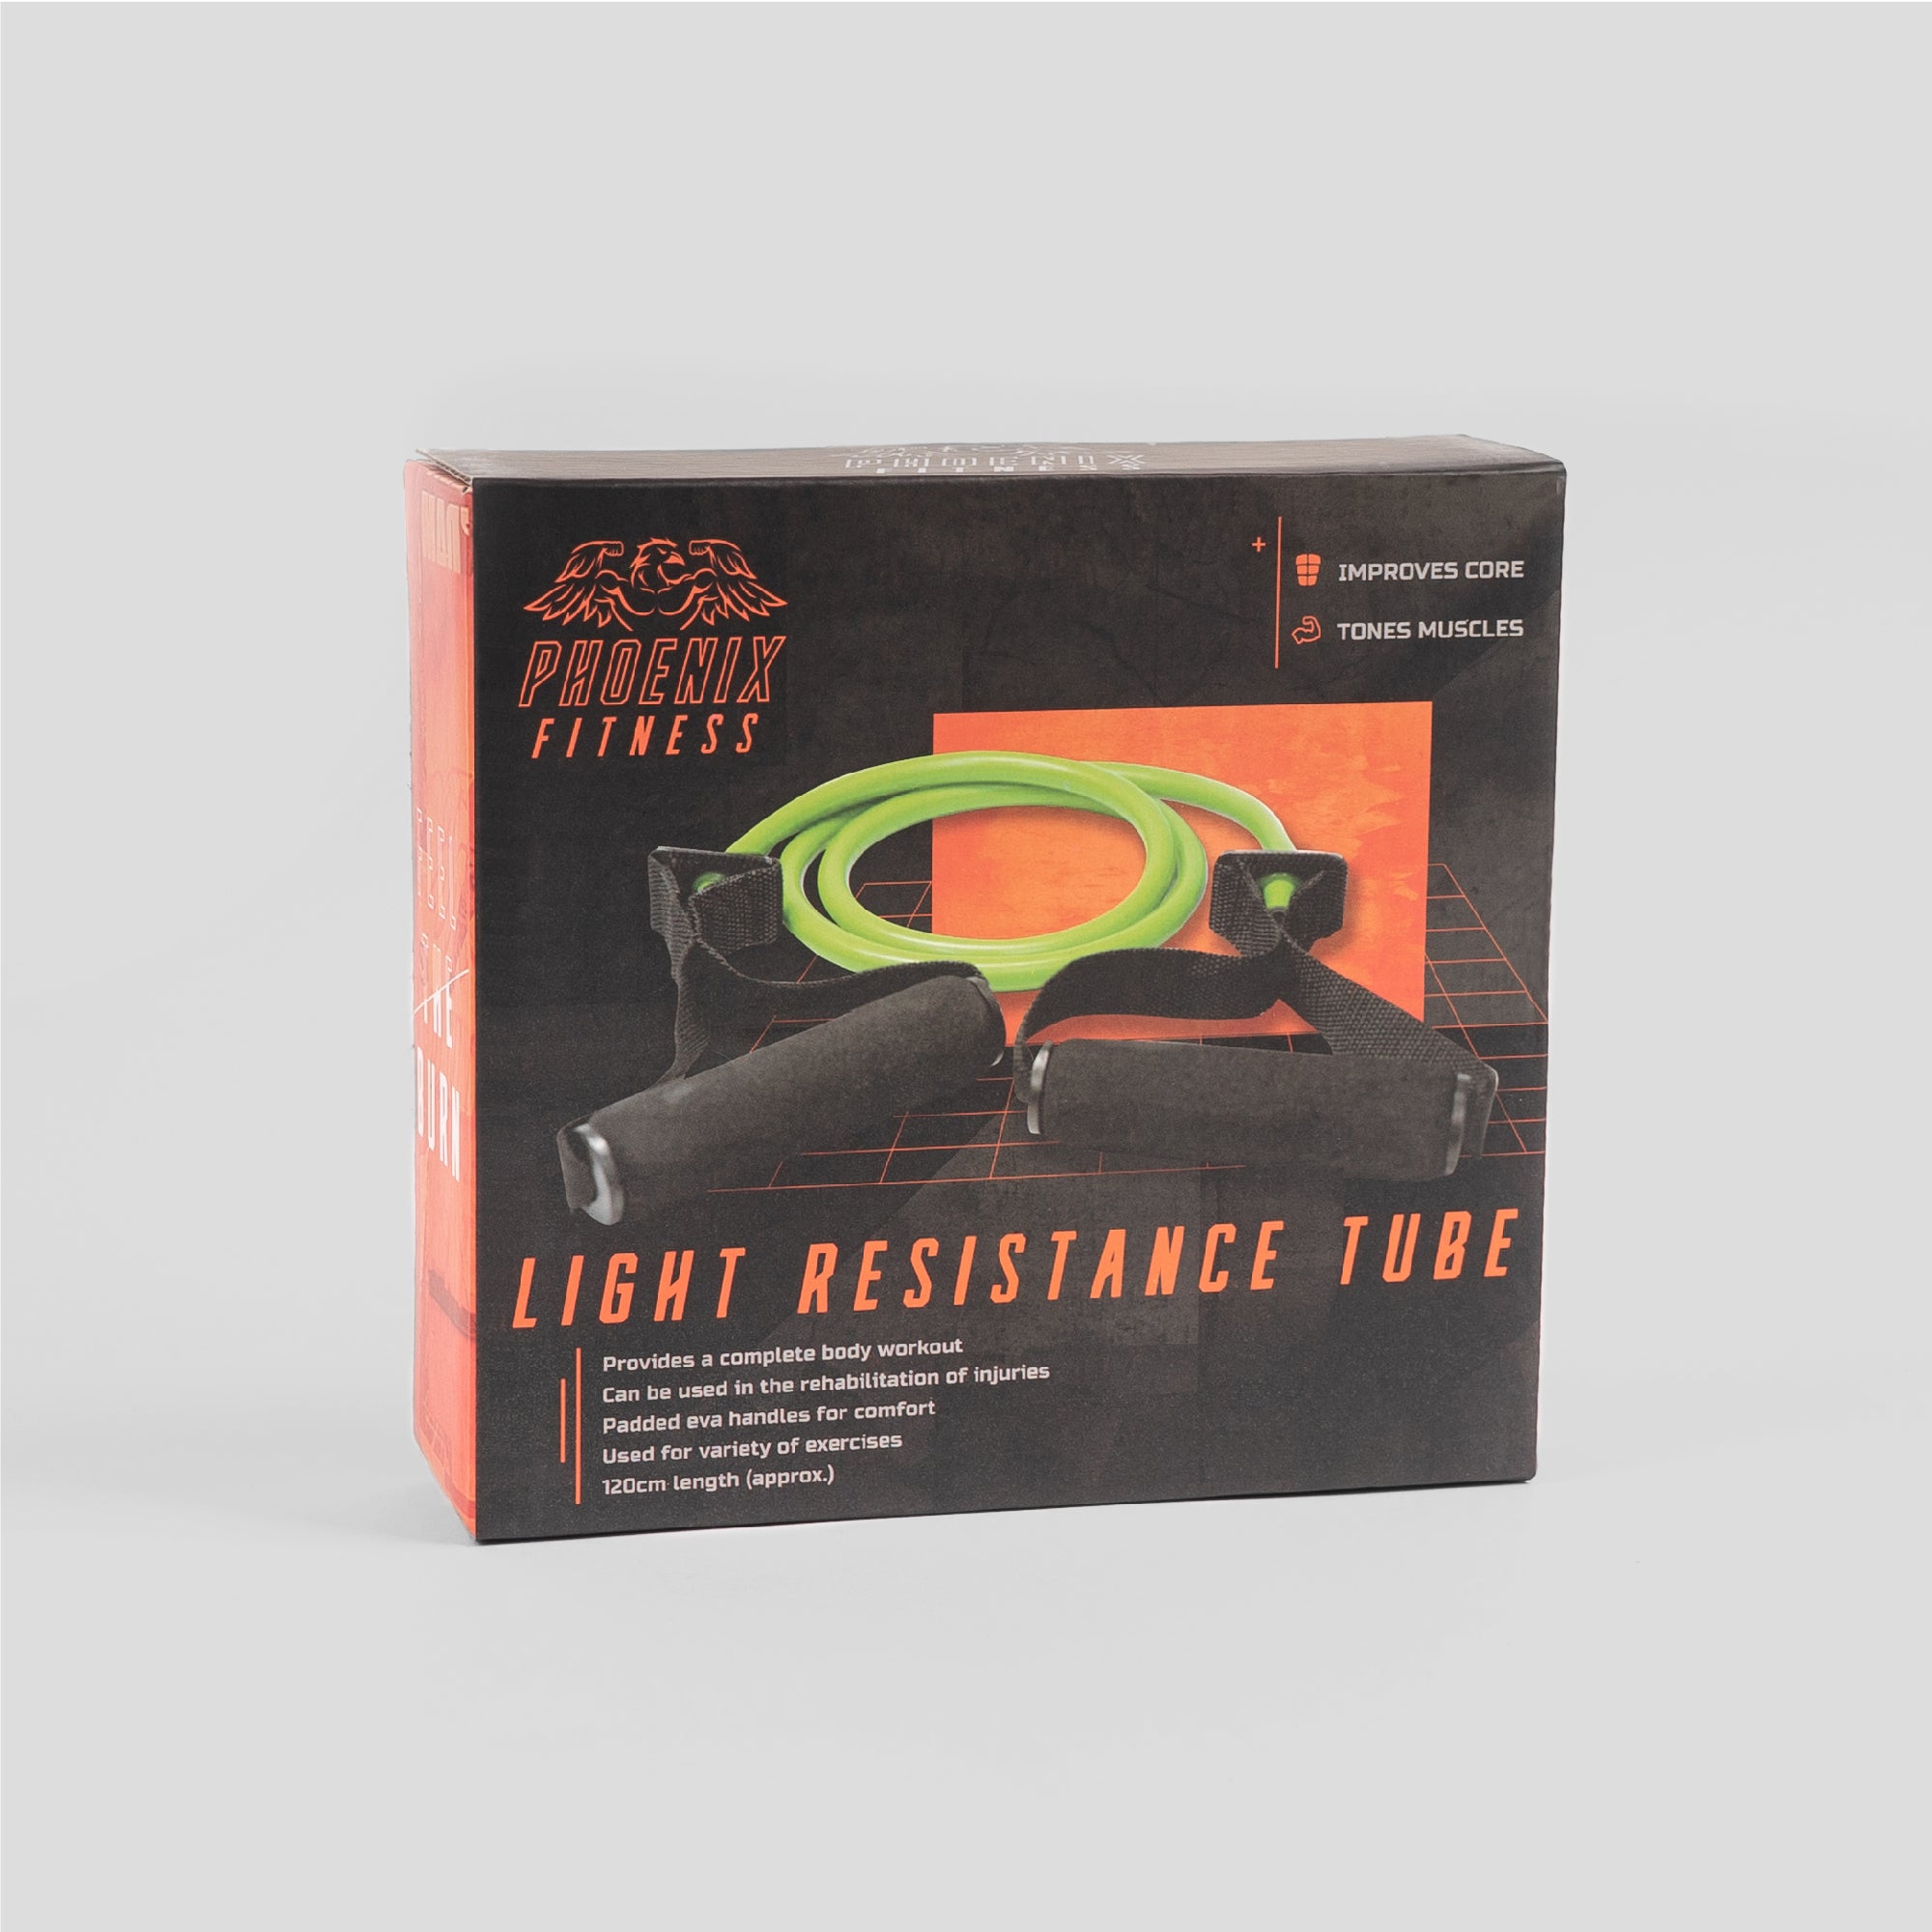 Resistance Tube - Light